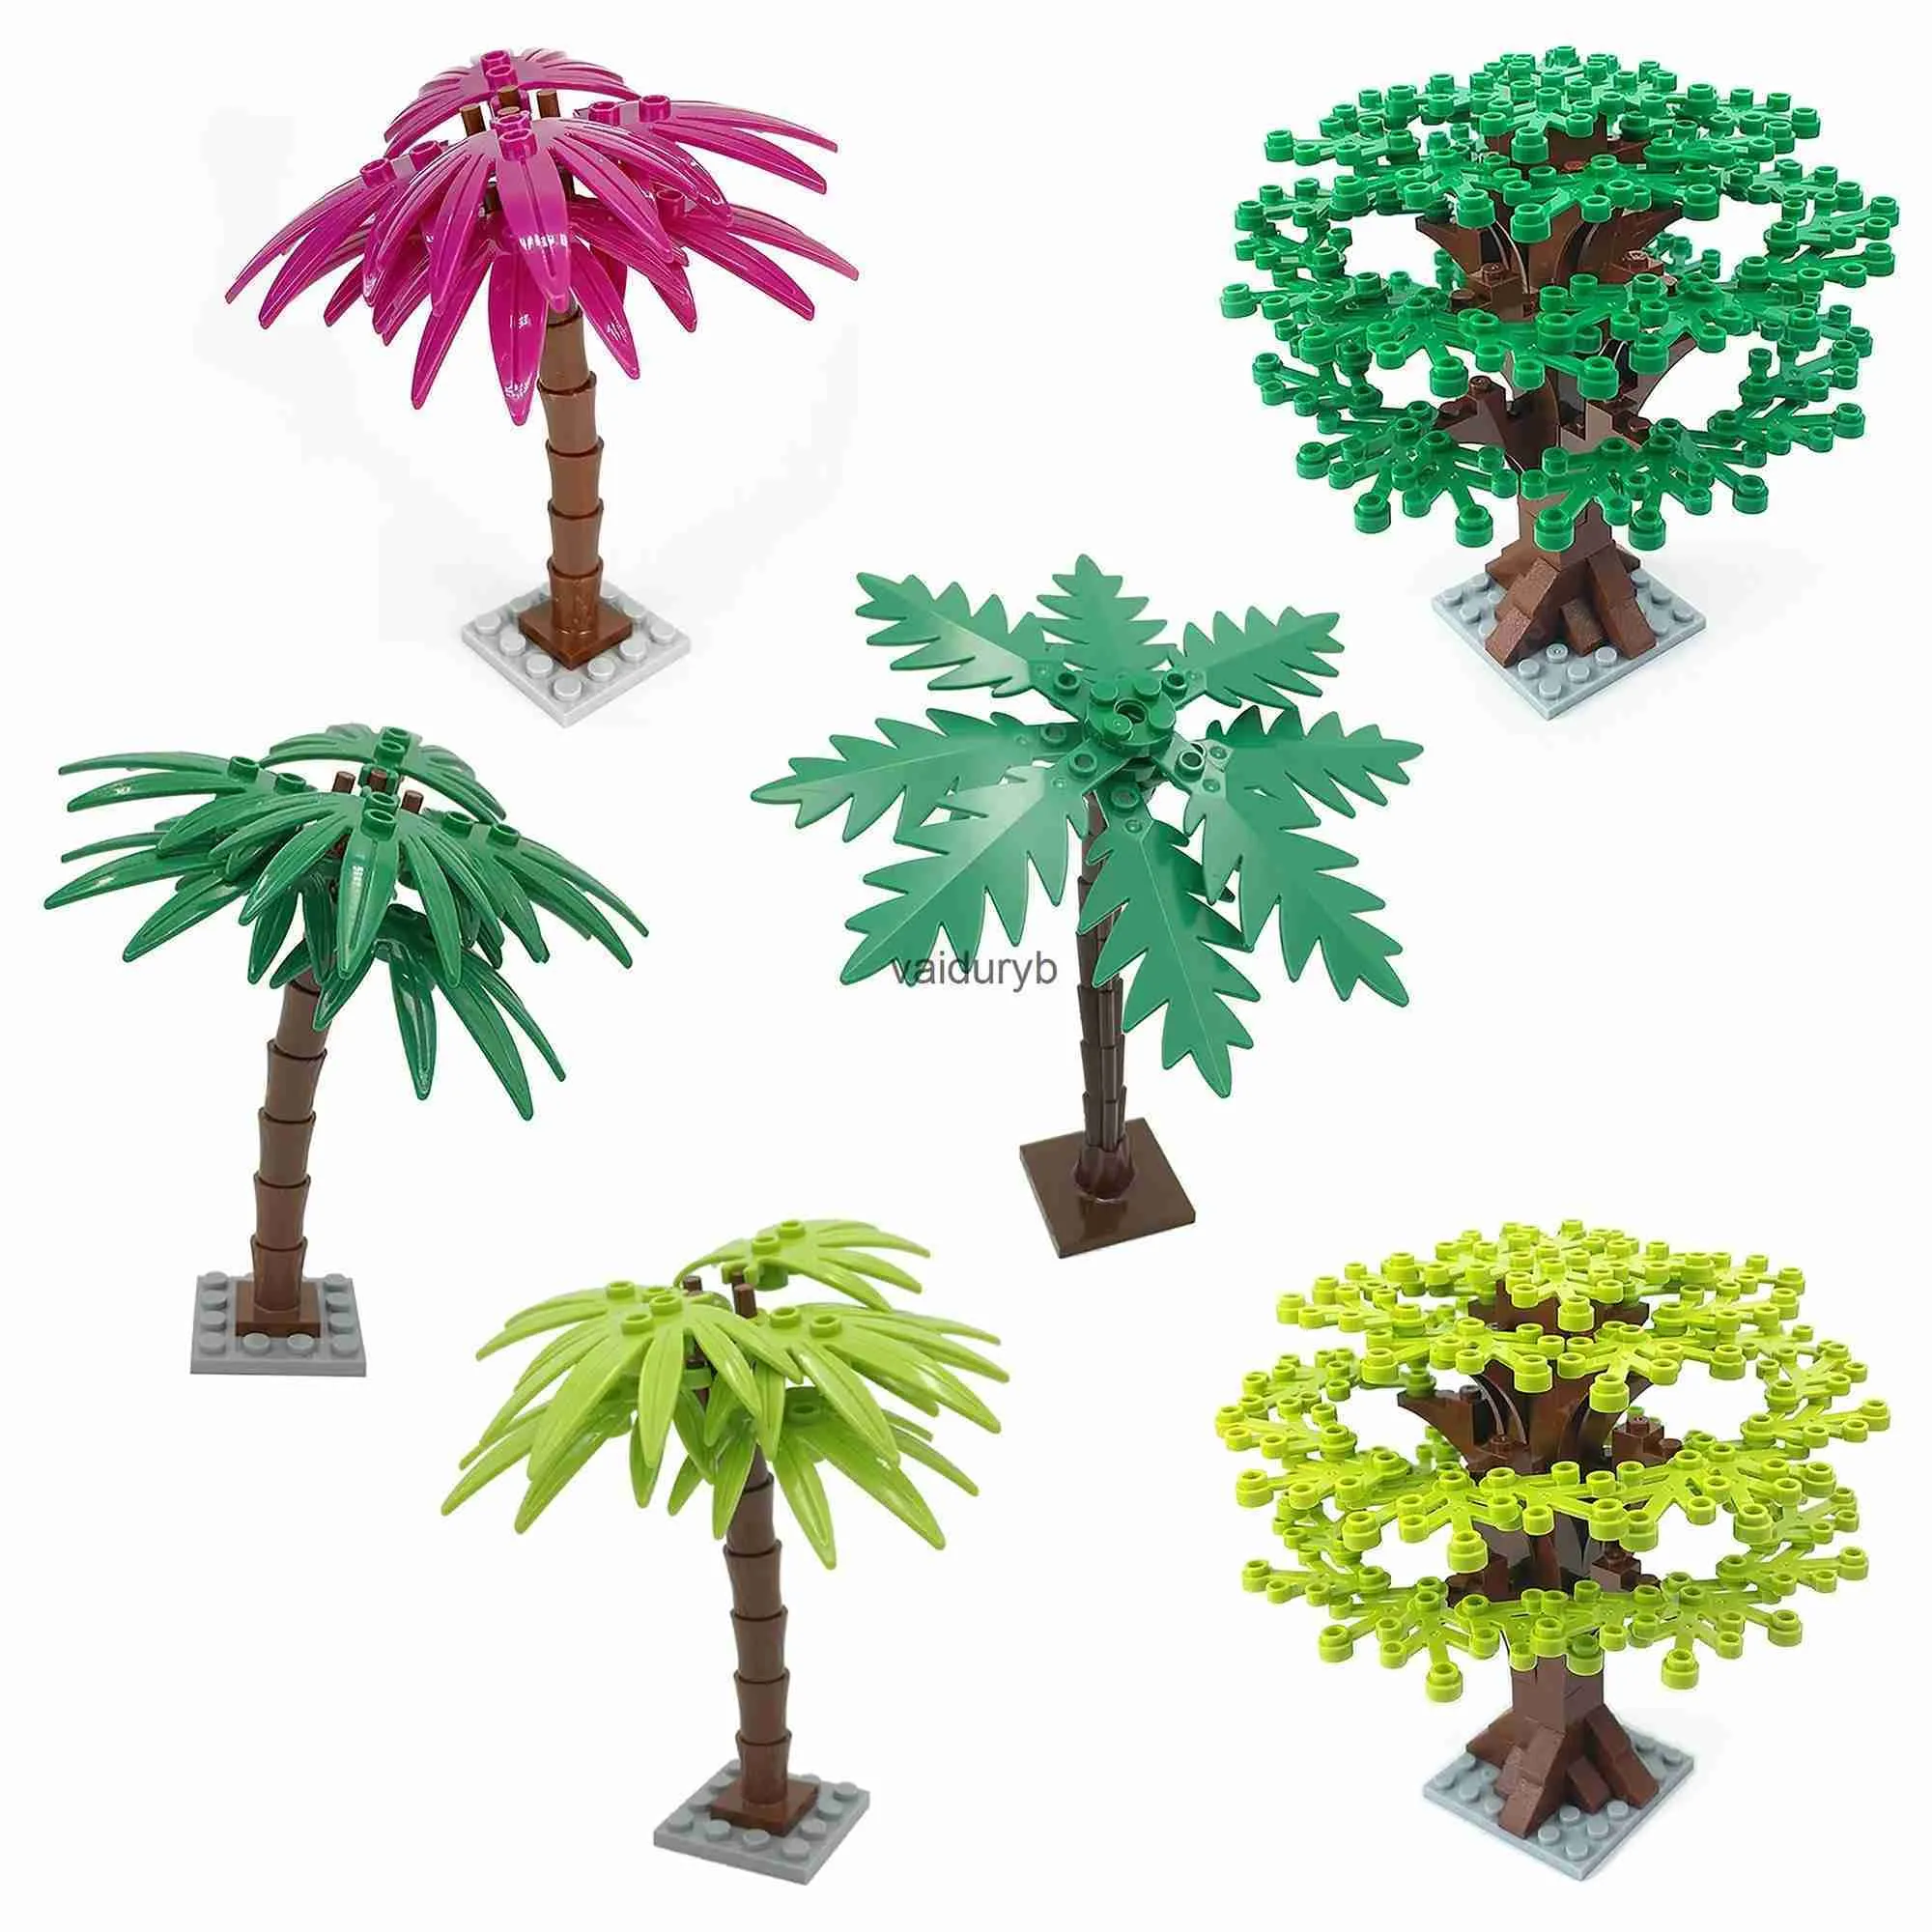 Julleksak levererar 1 st palmträd byggstenar leksak kreativ växtprydnad för barn - en perfekt gåva! Vaiduryb